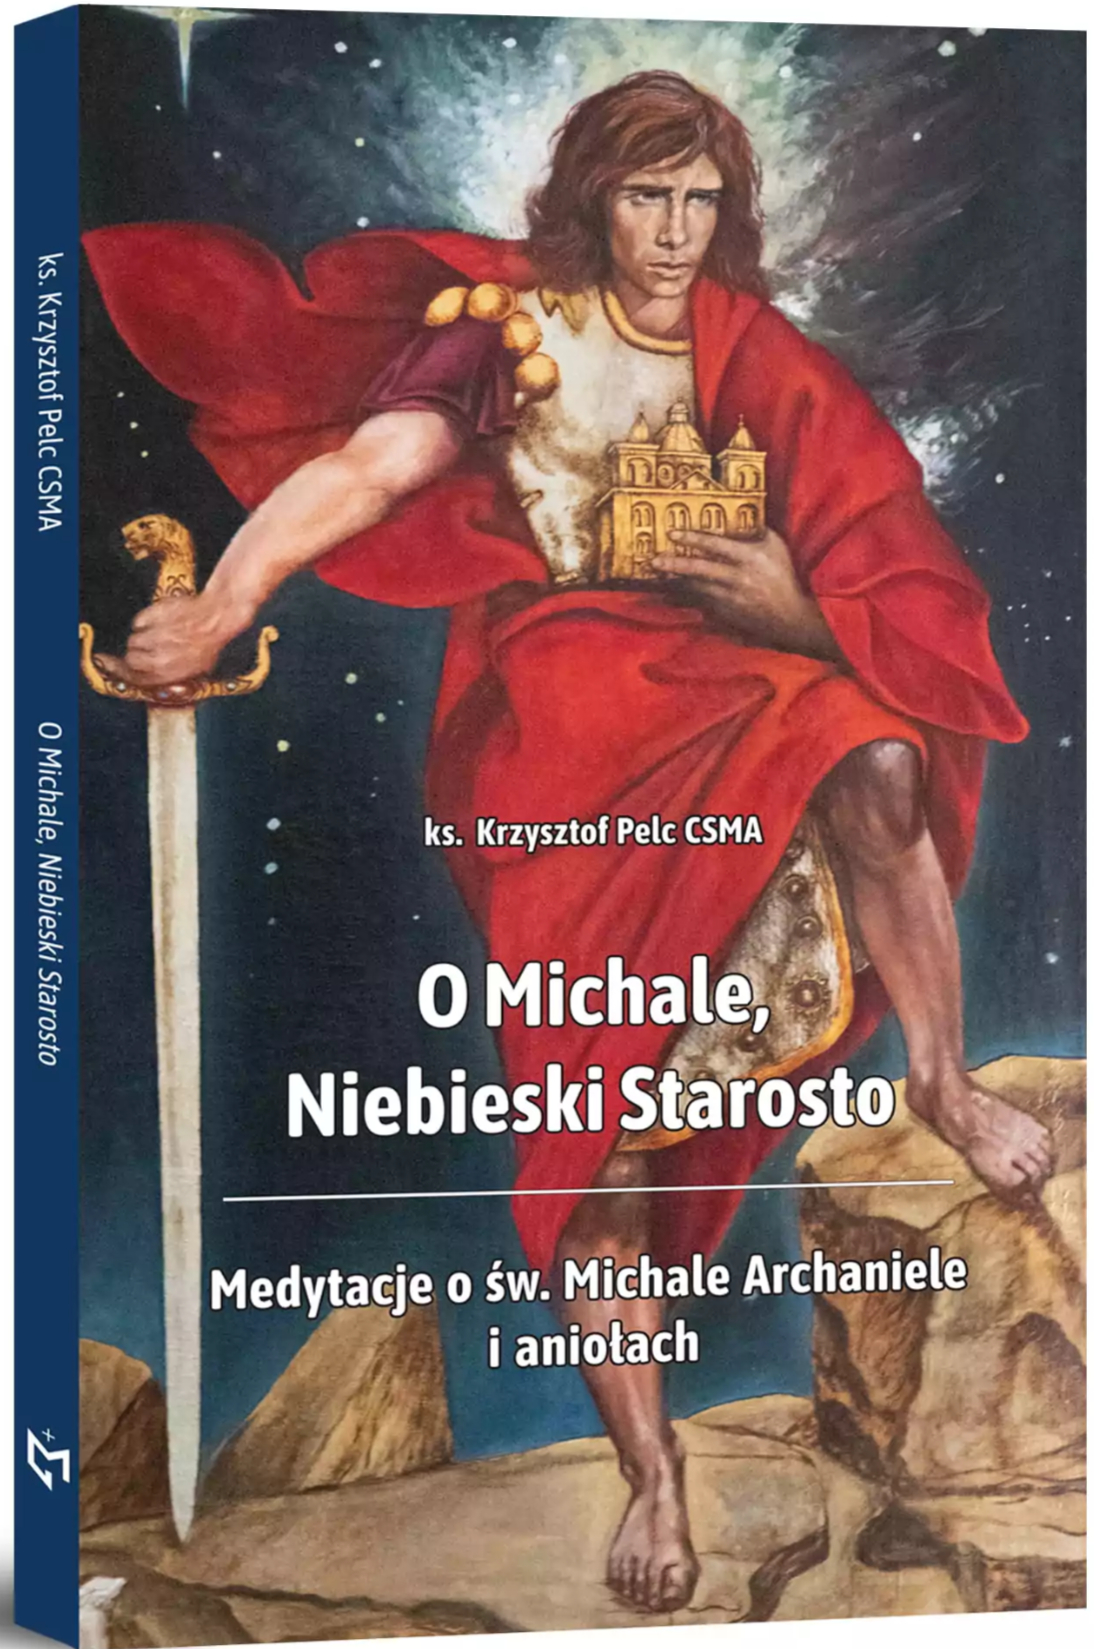 O Michale, Niebieski Starosto